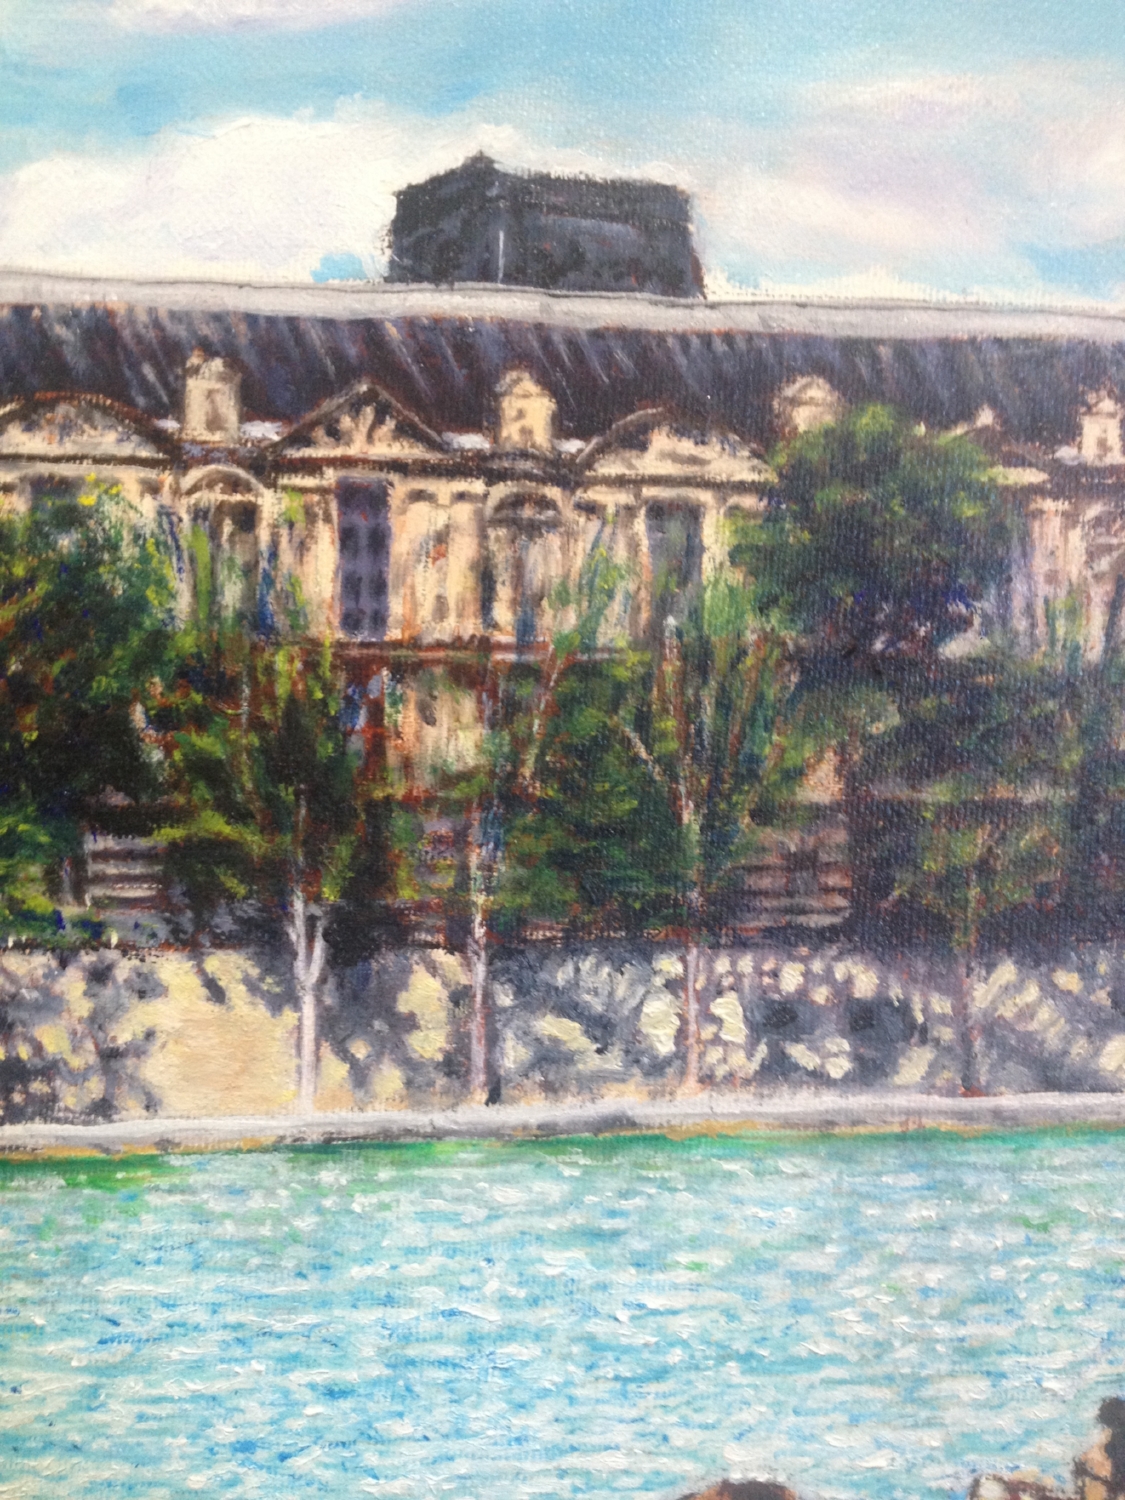 Across the Seine